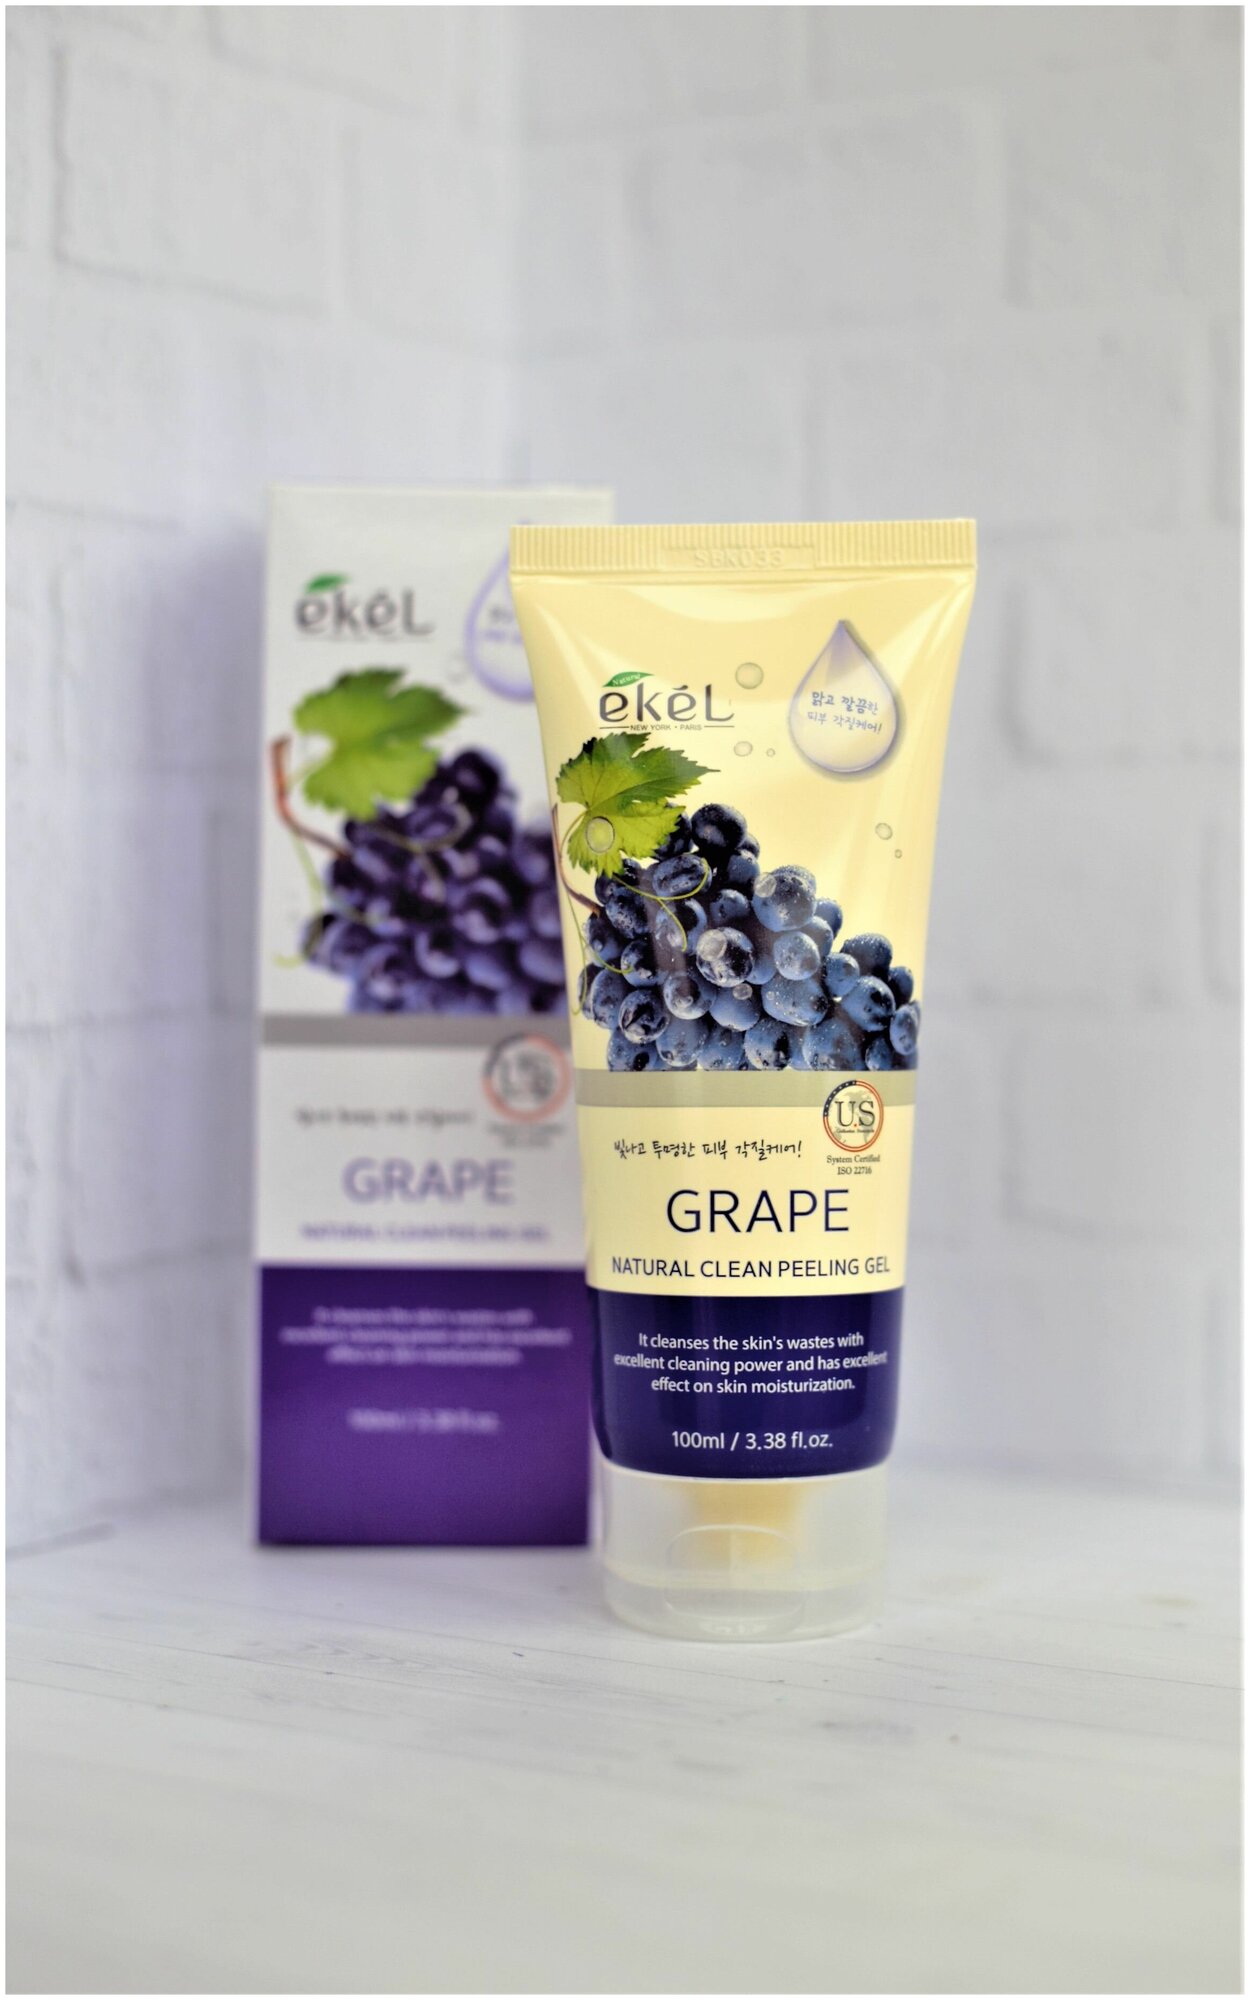 Ekel Пилинг-скатка Natural Clean Peeling Gel Grape с экстрактом винограда, 100 мл - фотография № 3